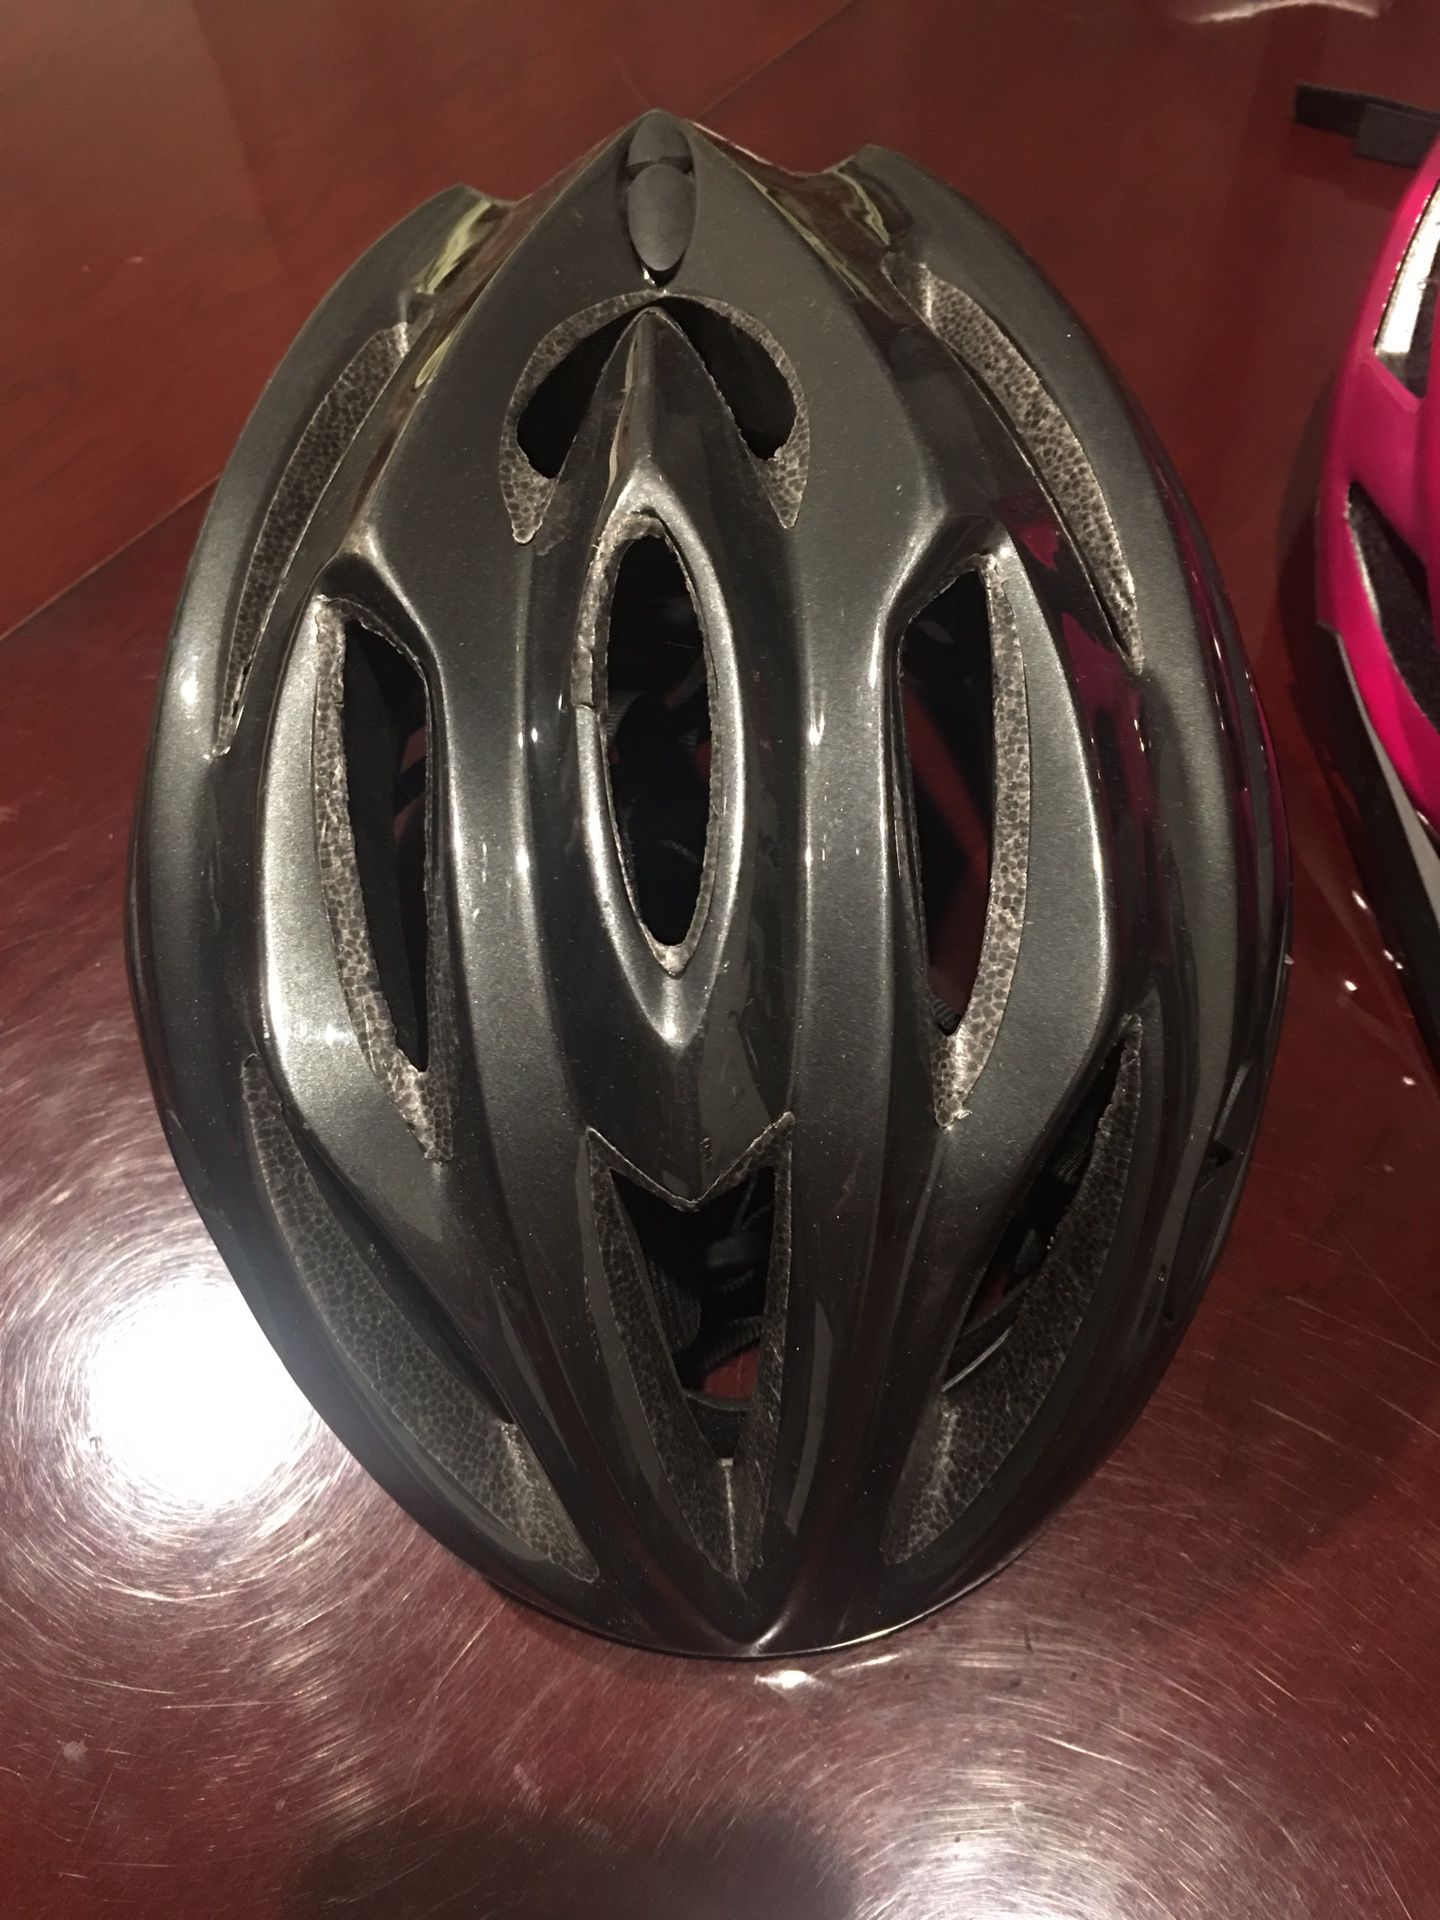 Man’s bike helmet